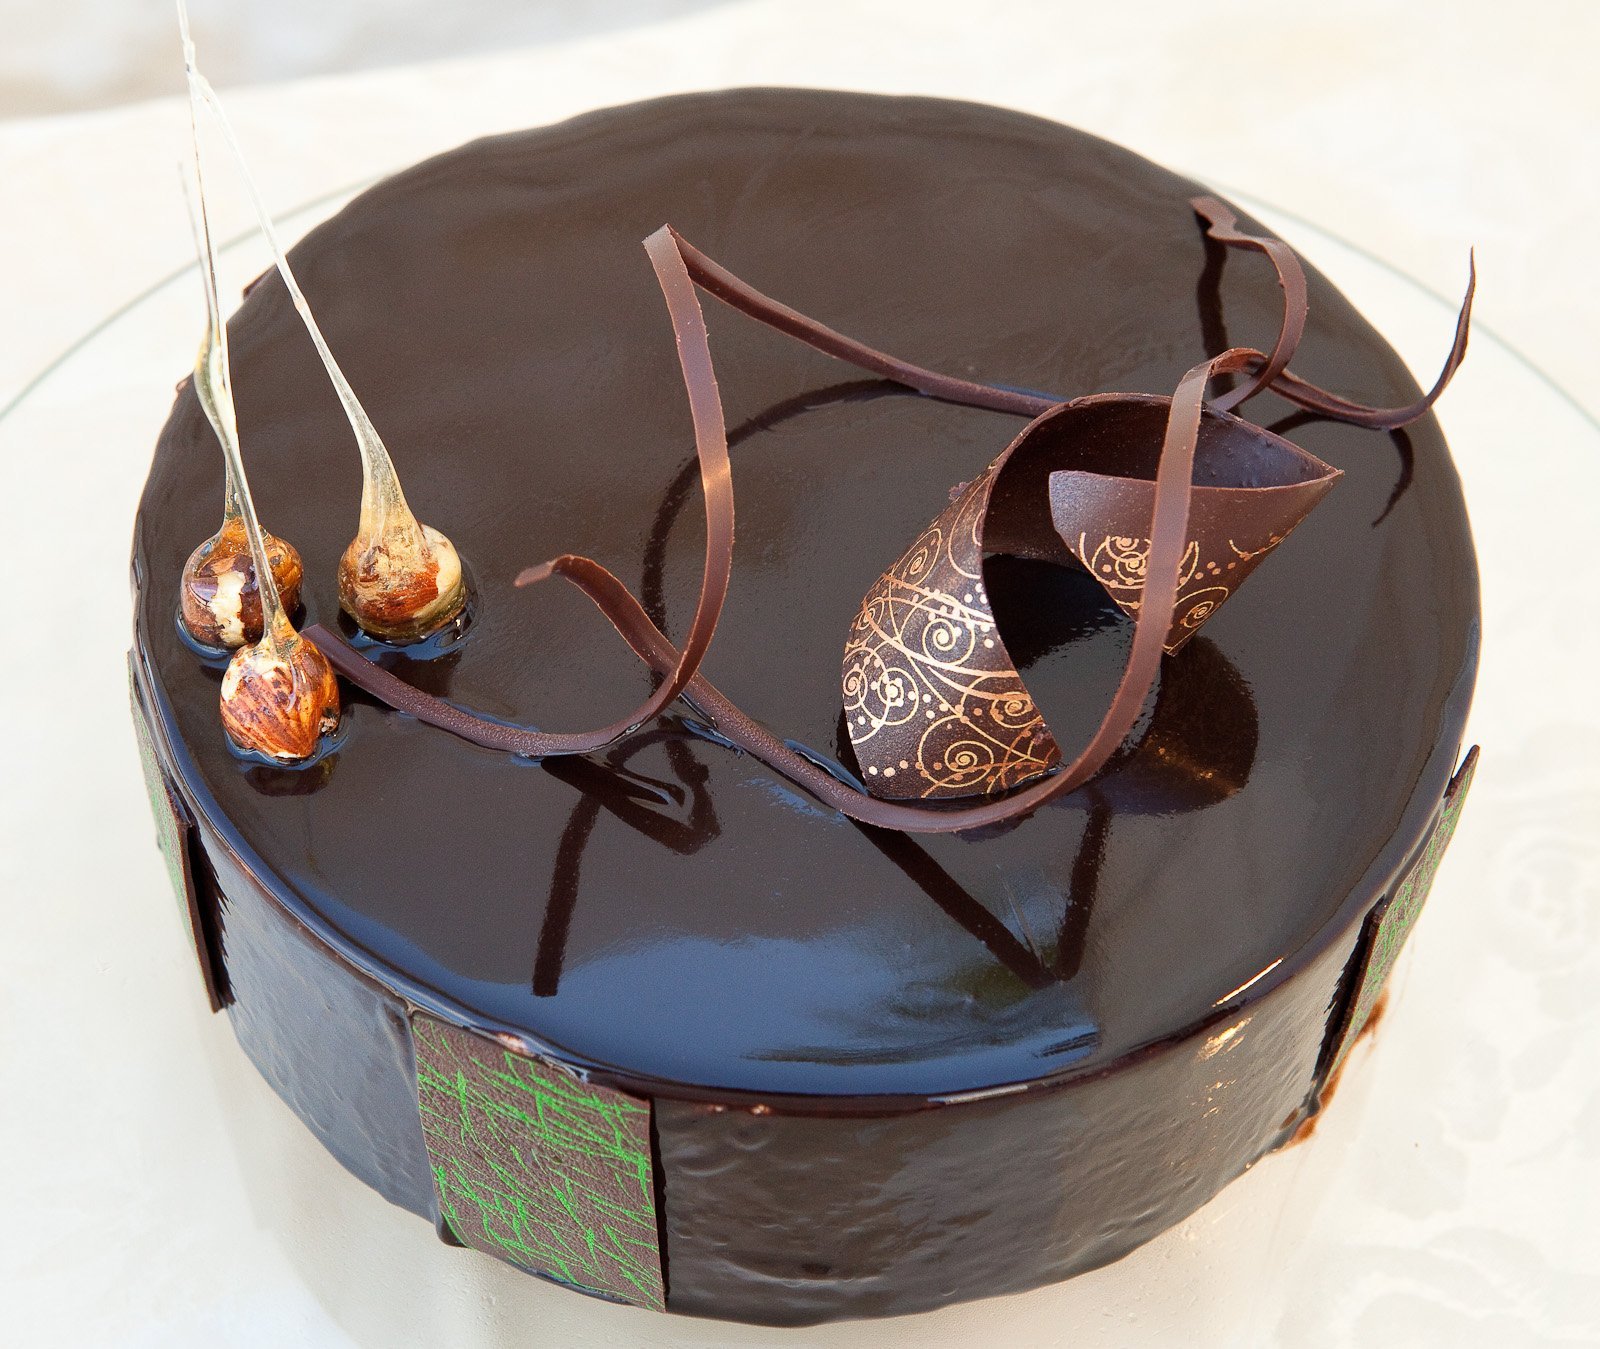 Как сделать из шоколада украшение на торт: фото, видео, как украсить торт шоколадом — ISaloni — студия интерьера, салон обоев